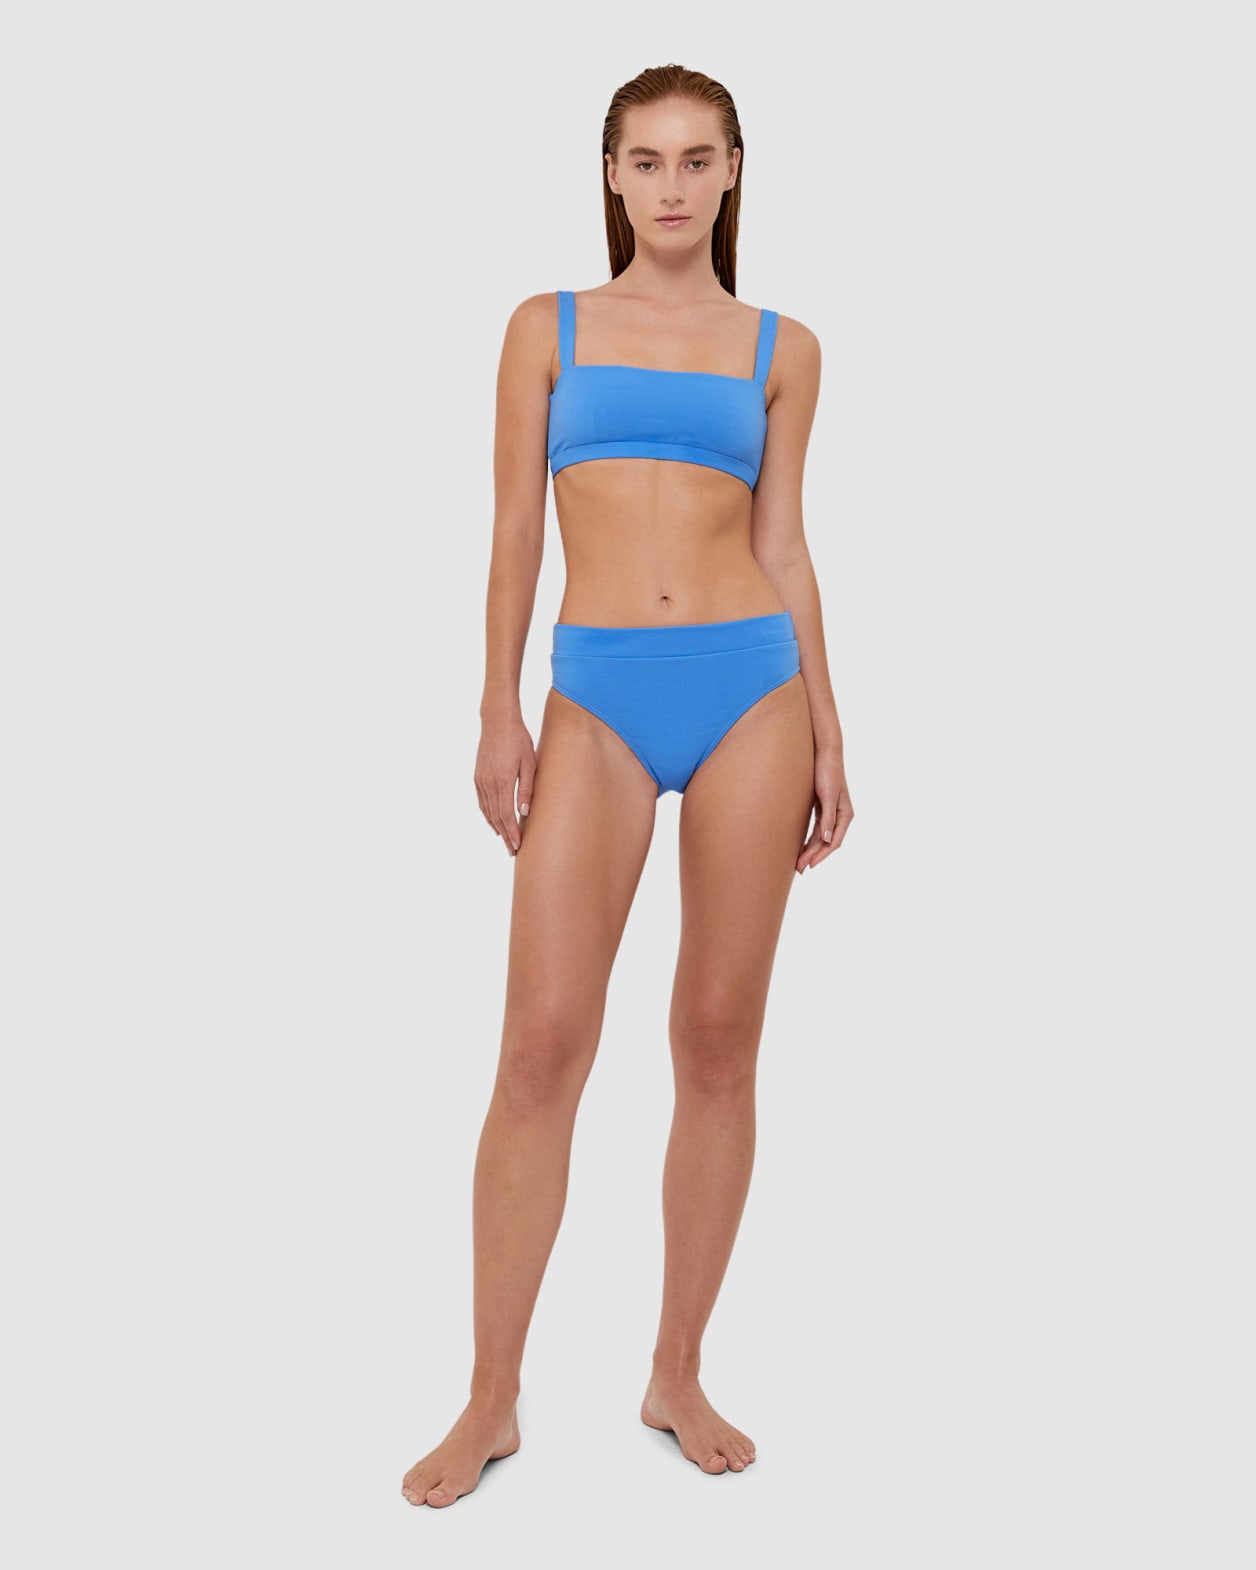 Koa Bikini Balconette Bra in CORNFLOWER